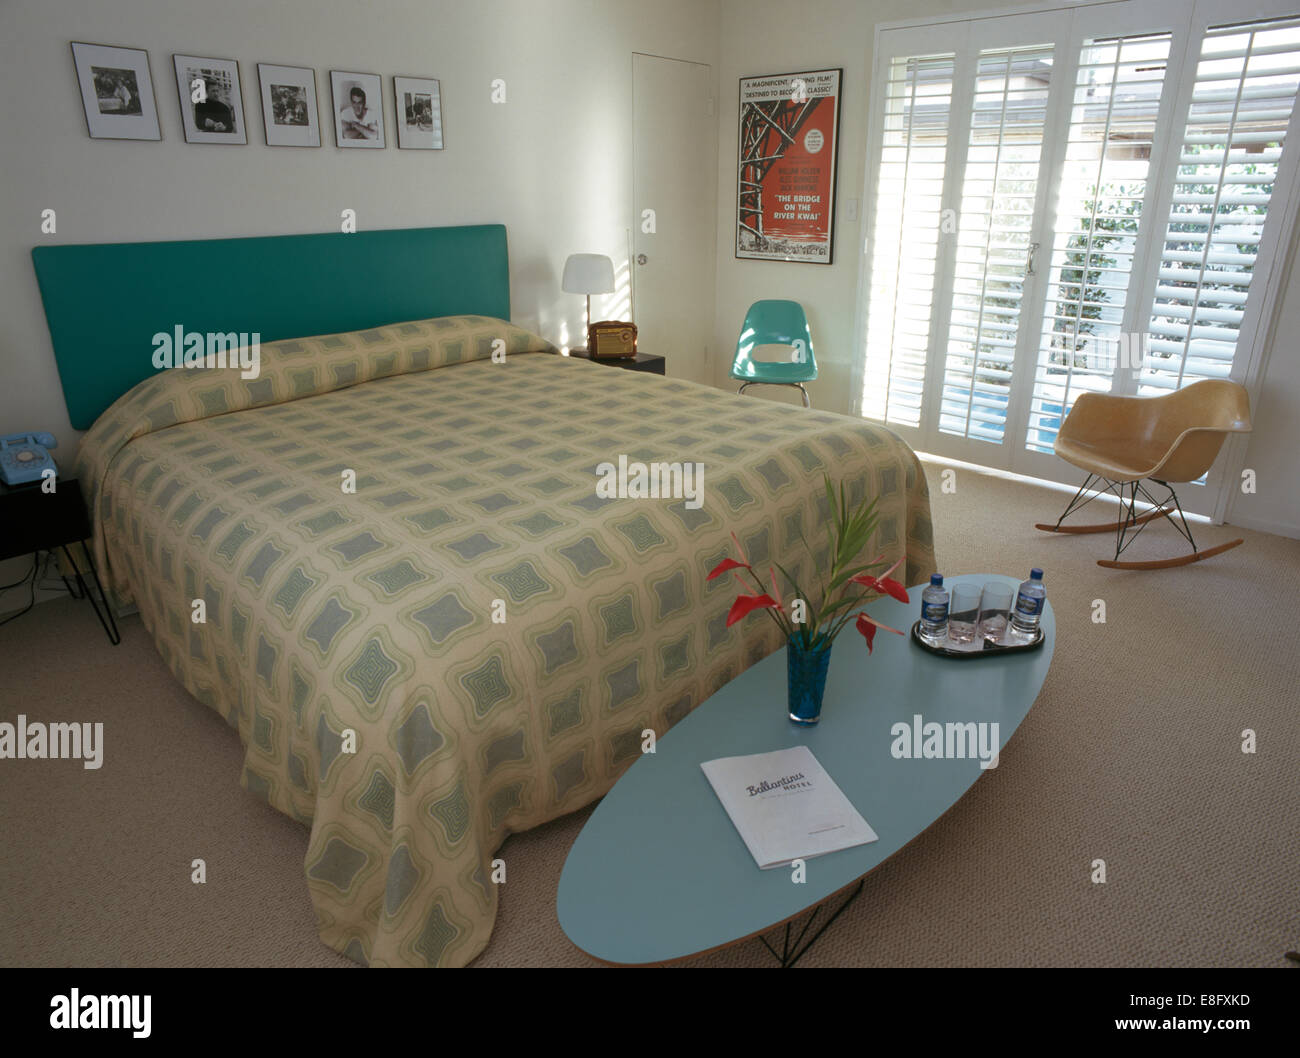 Table basse ovale et Charles Eames chaise dans une chambre moderne et agrémentées de couvercle sur le lit avec tête de lit rembourrée Banque D'Images